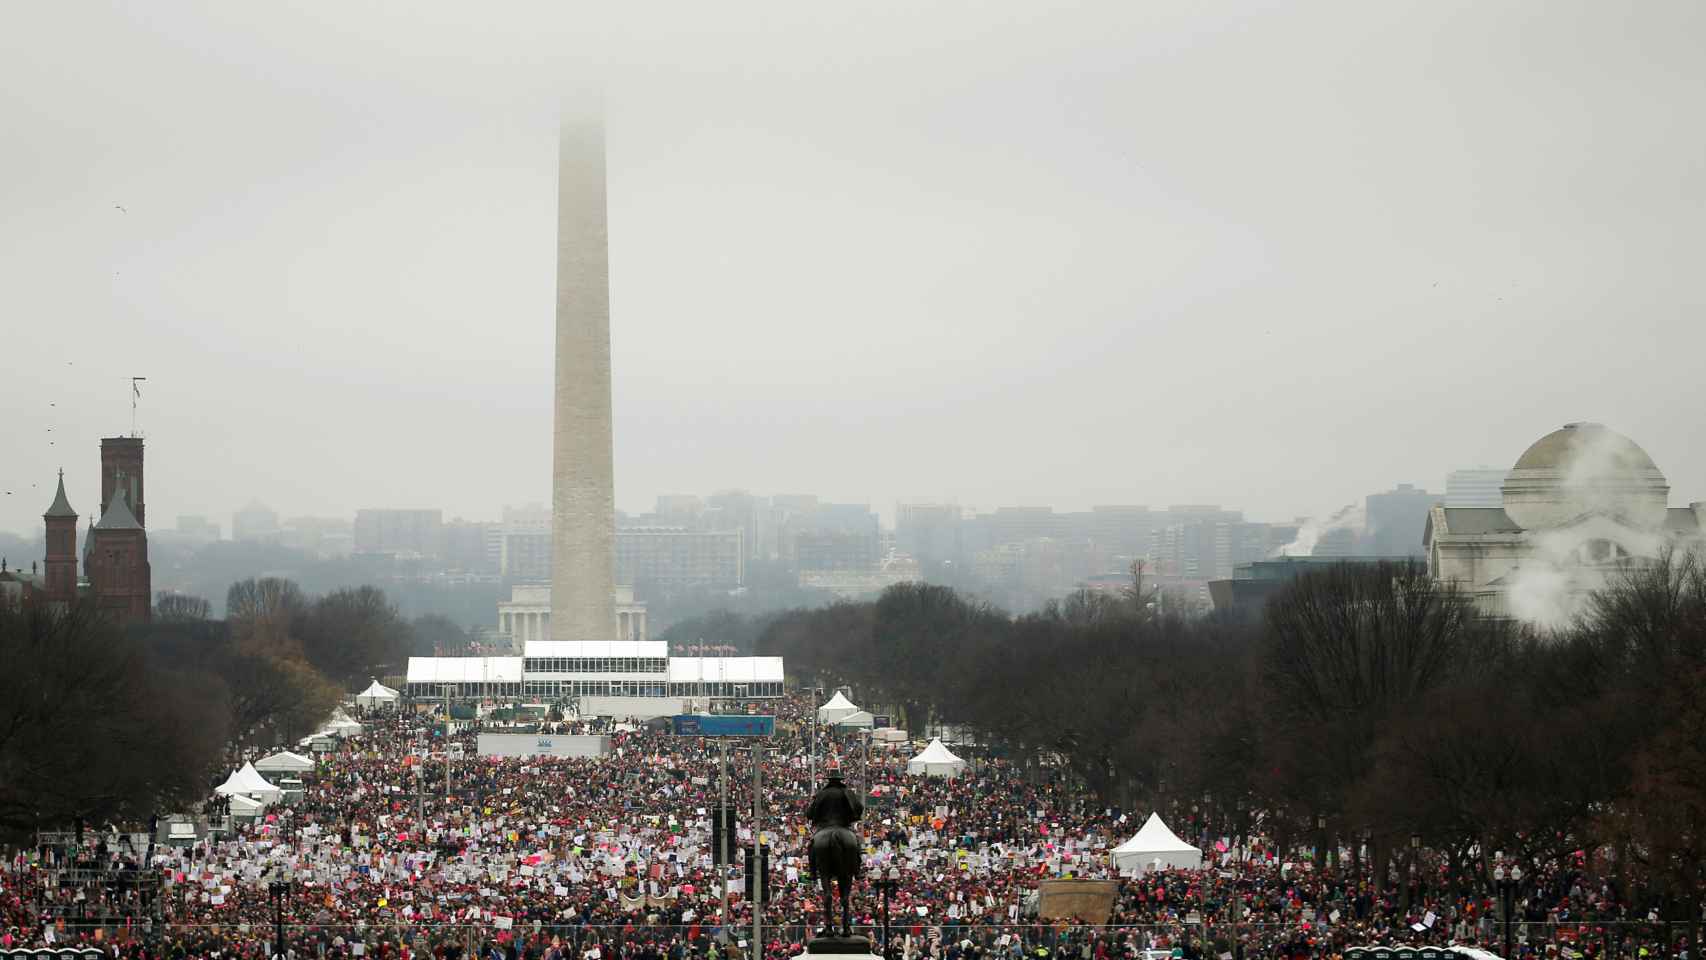 Vista de la marcha junto al obelisco del Monumento a Washington.